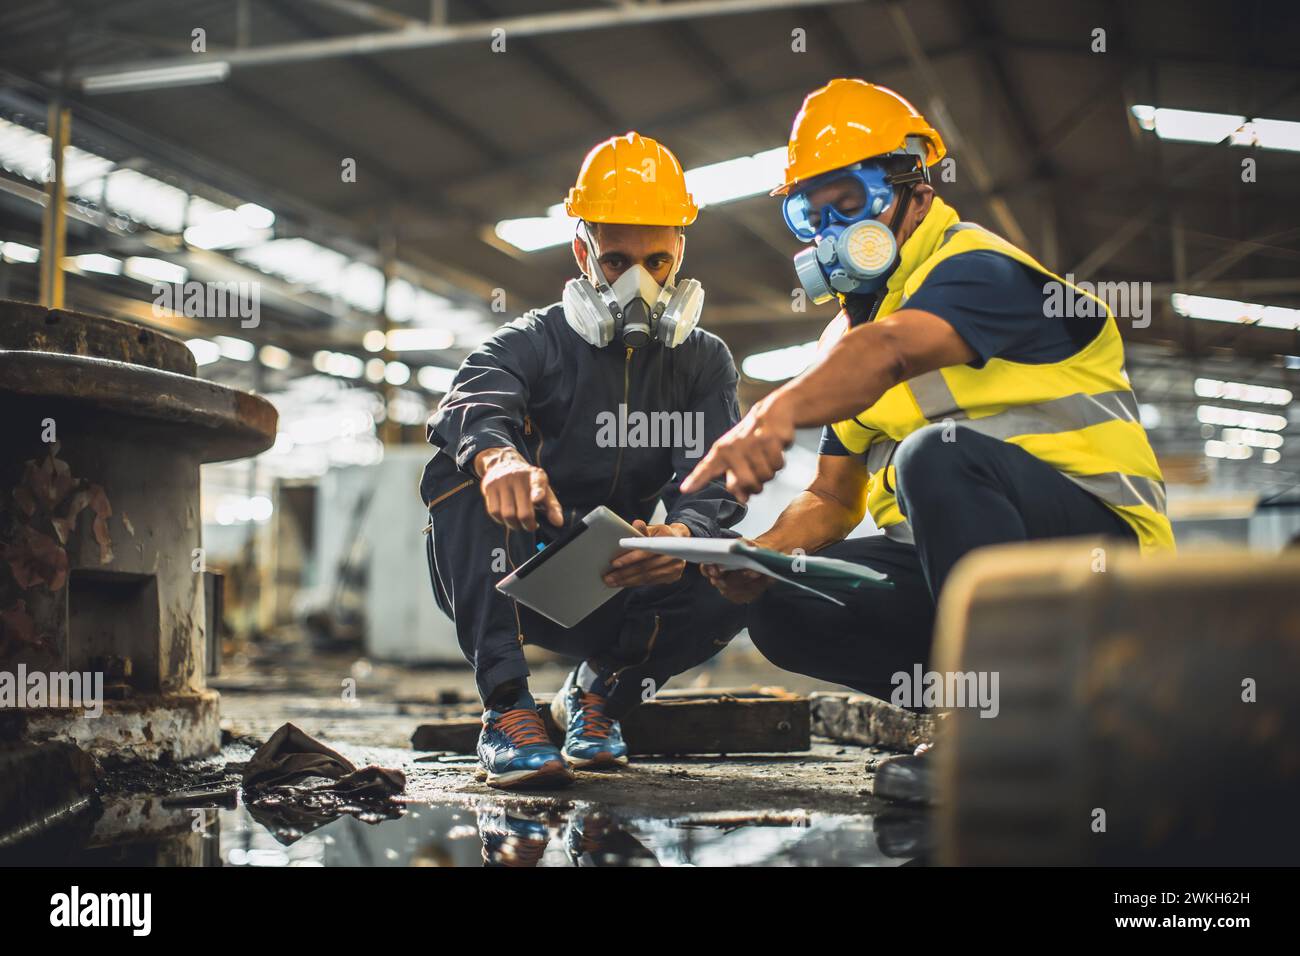 Sicherheitsteam für giftige chemische Gase Arbeiten Reinigung in Gefahrenfabrik Werkstattumgebung Verunreinigungssicherheit und -Schutz Stockfoto